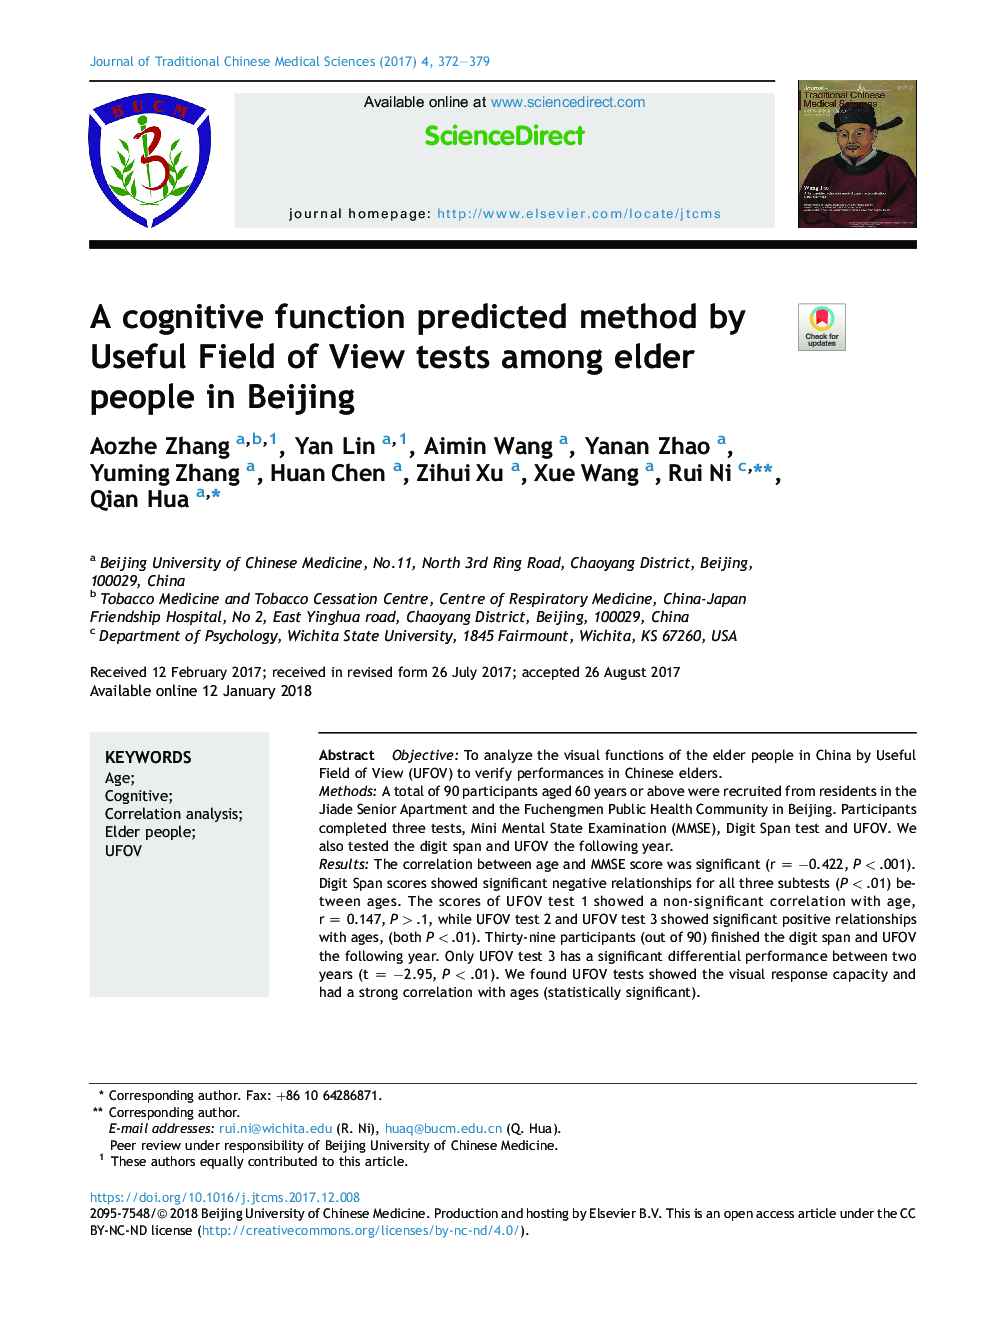 یک تابع شناختی روش پیش بینی شده توسط آزمایشات مفید میدان بین افراد مسن در پکن را پیش بینی کرد 